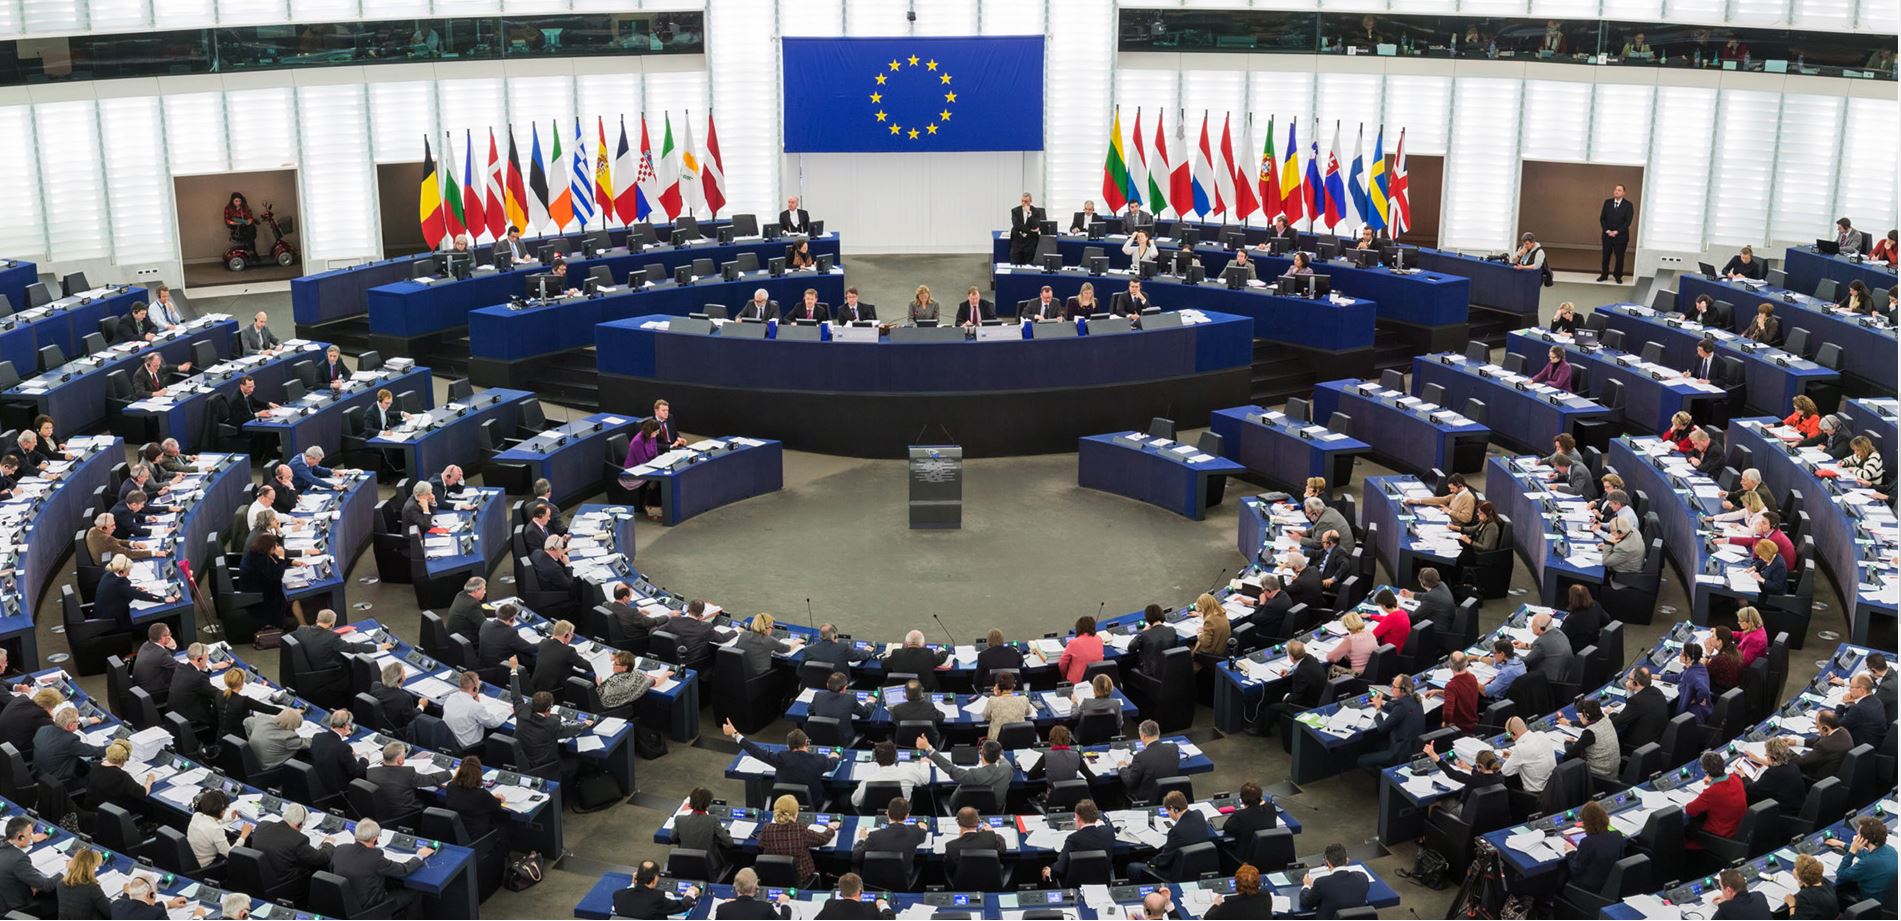 Aşırı sağ siyasetin 2024 Avrupa Parlamentosu seçimlerinde güçlü bir etkiye sahip olacağı tahmin ediliyor | Kaos GL - LGBTİ+ Haber Portalı Haber